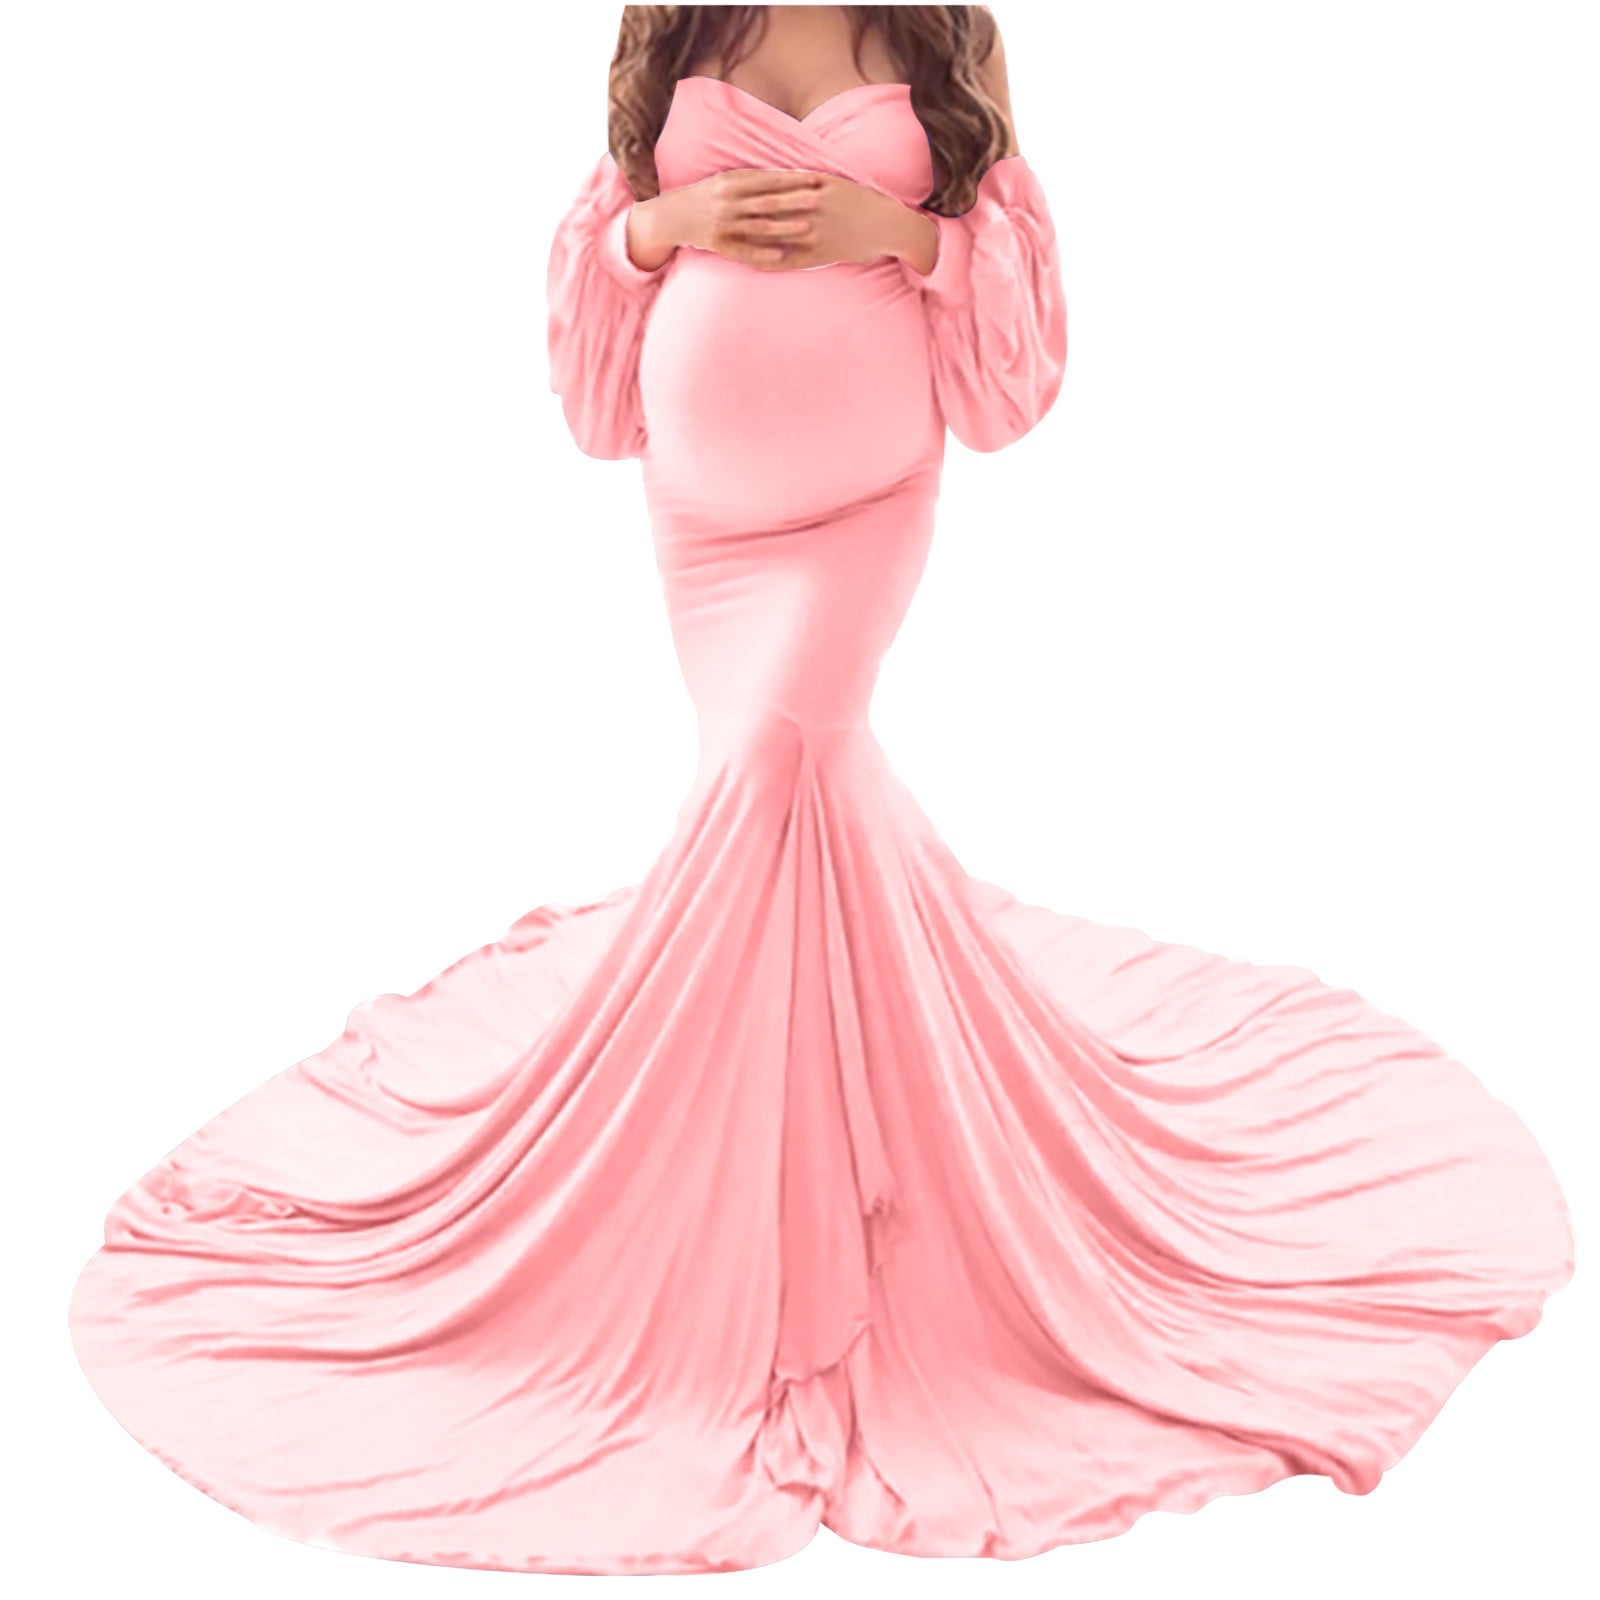 gakvbuo Maternity Dress For Women Plus Size Summer Baby Shower Pregnancy  Dresses For Photoshoot Maternity Clothing Women Pregnants Photography Props